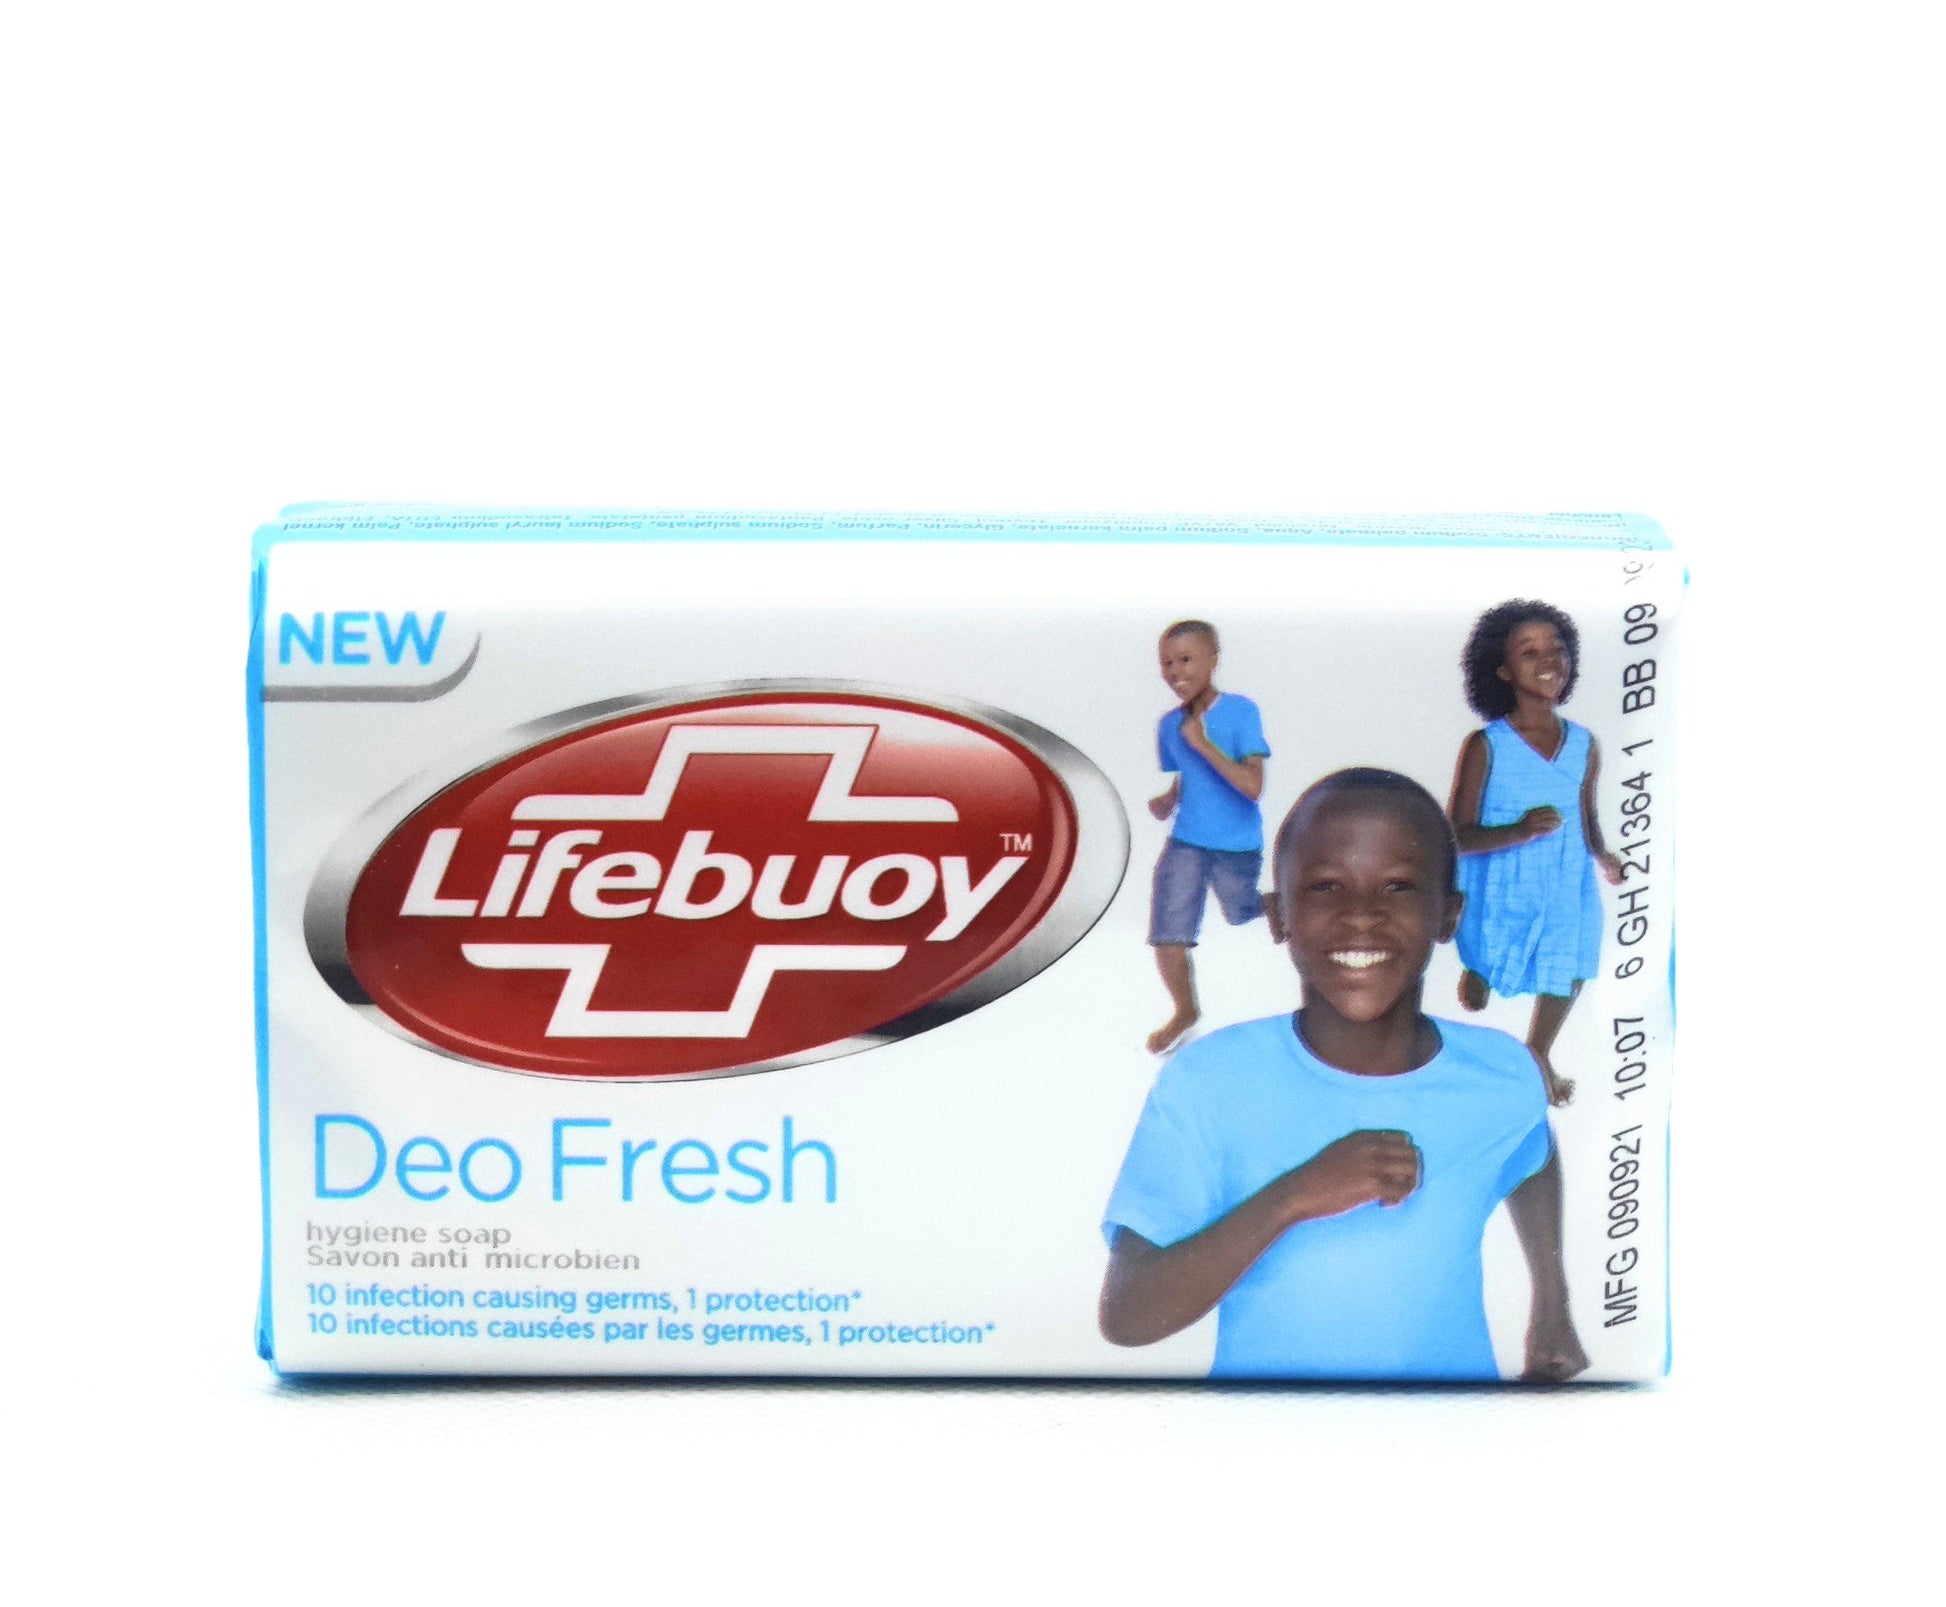 175 gram bar of lifebuoy deo fresh soap